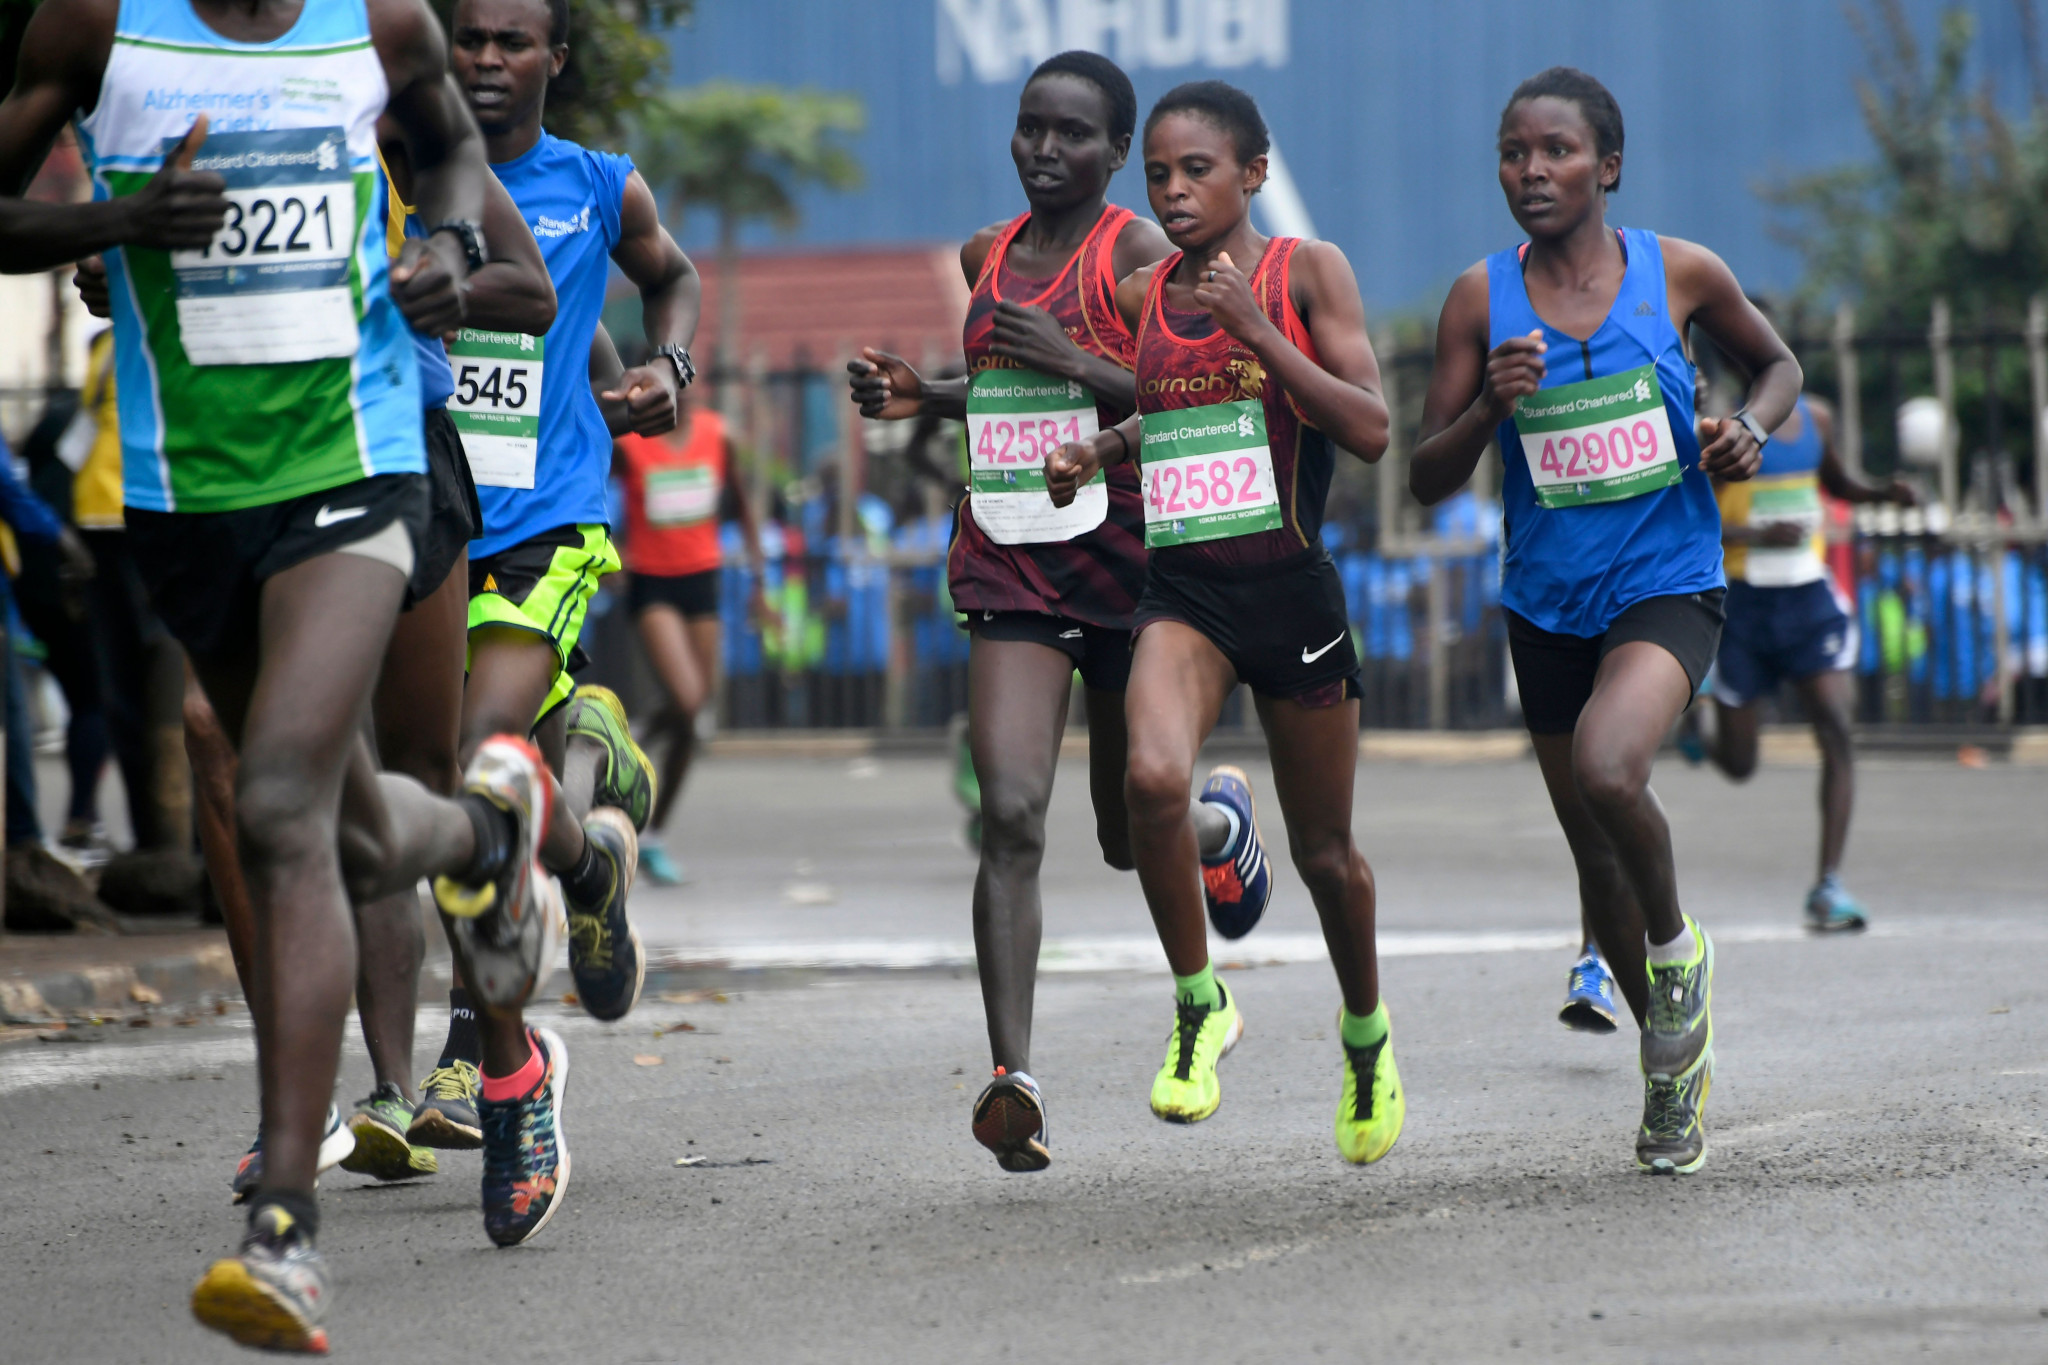 Nairobi Marathon to return in October after 2020 cancellation